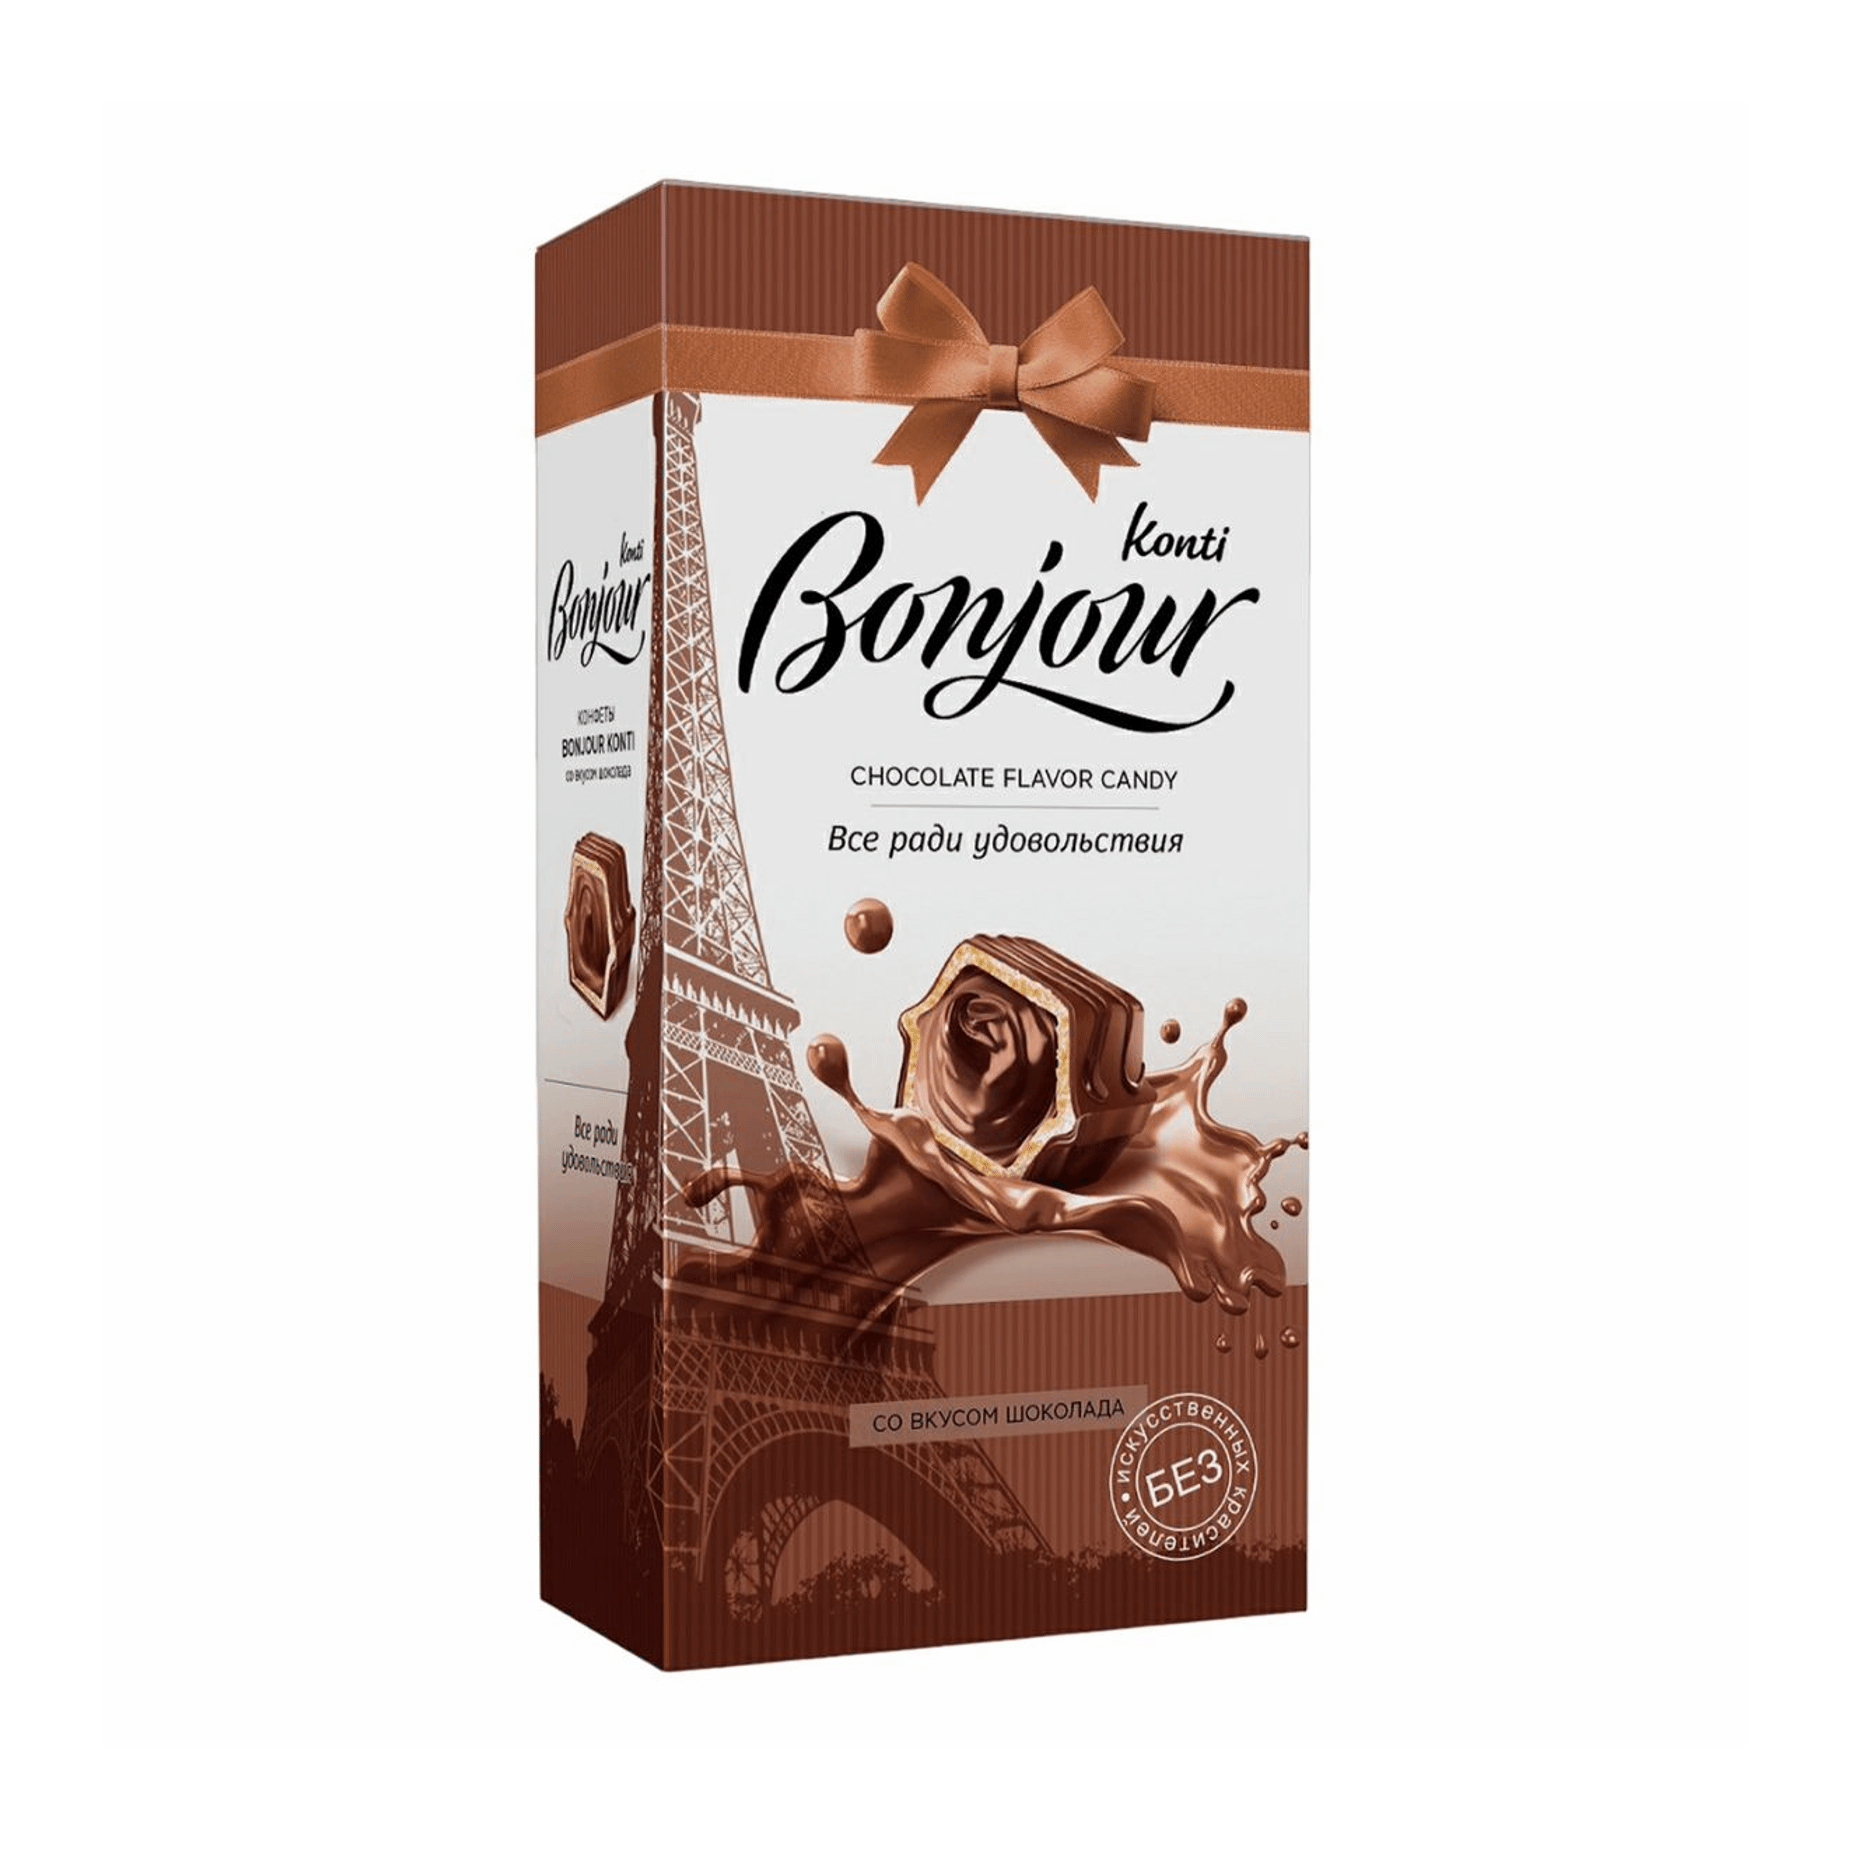 конфеты джек шоколадные истории konti 1 кг Конфеты шоколадные Konti Bonjour со вкусом шоколада 80 г